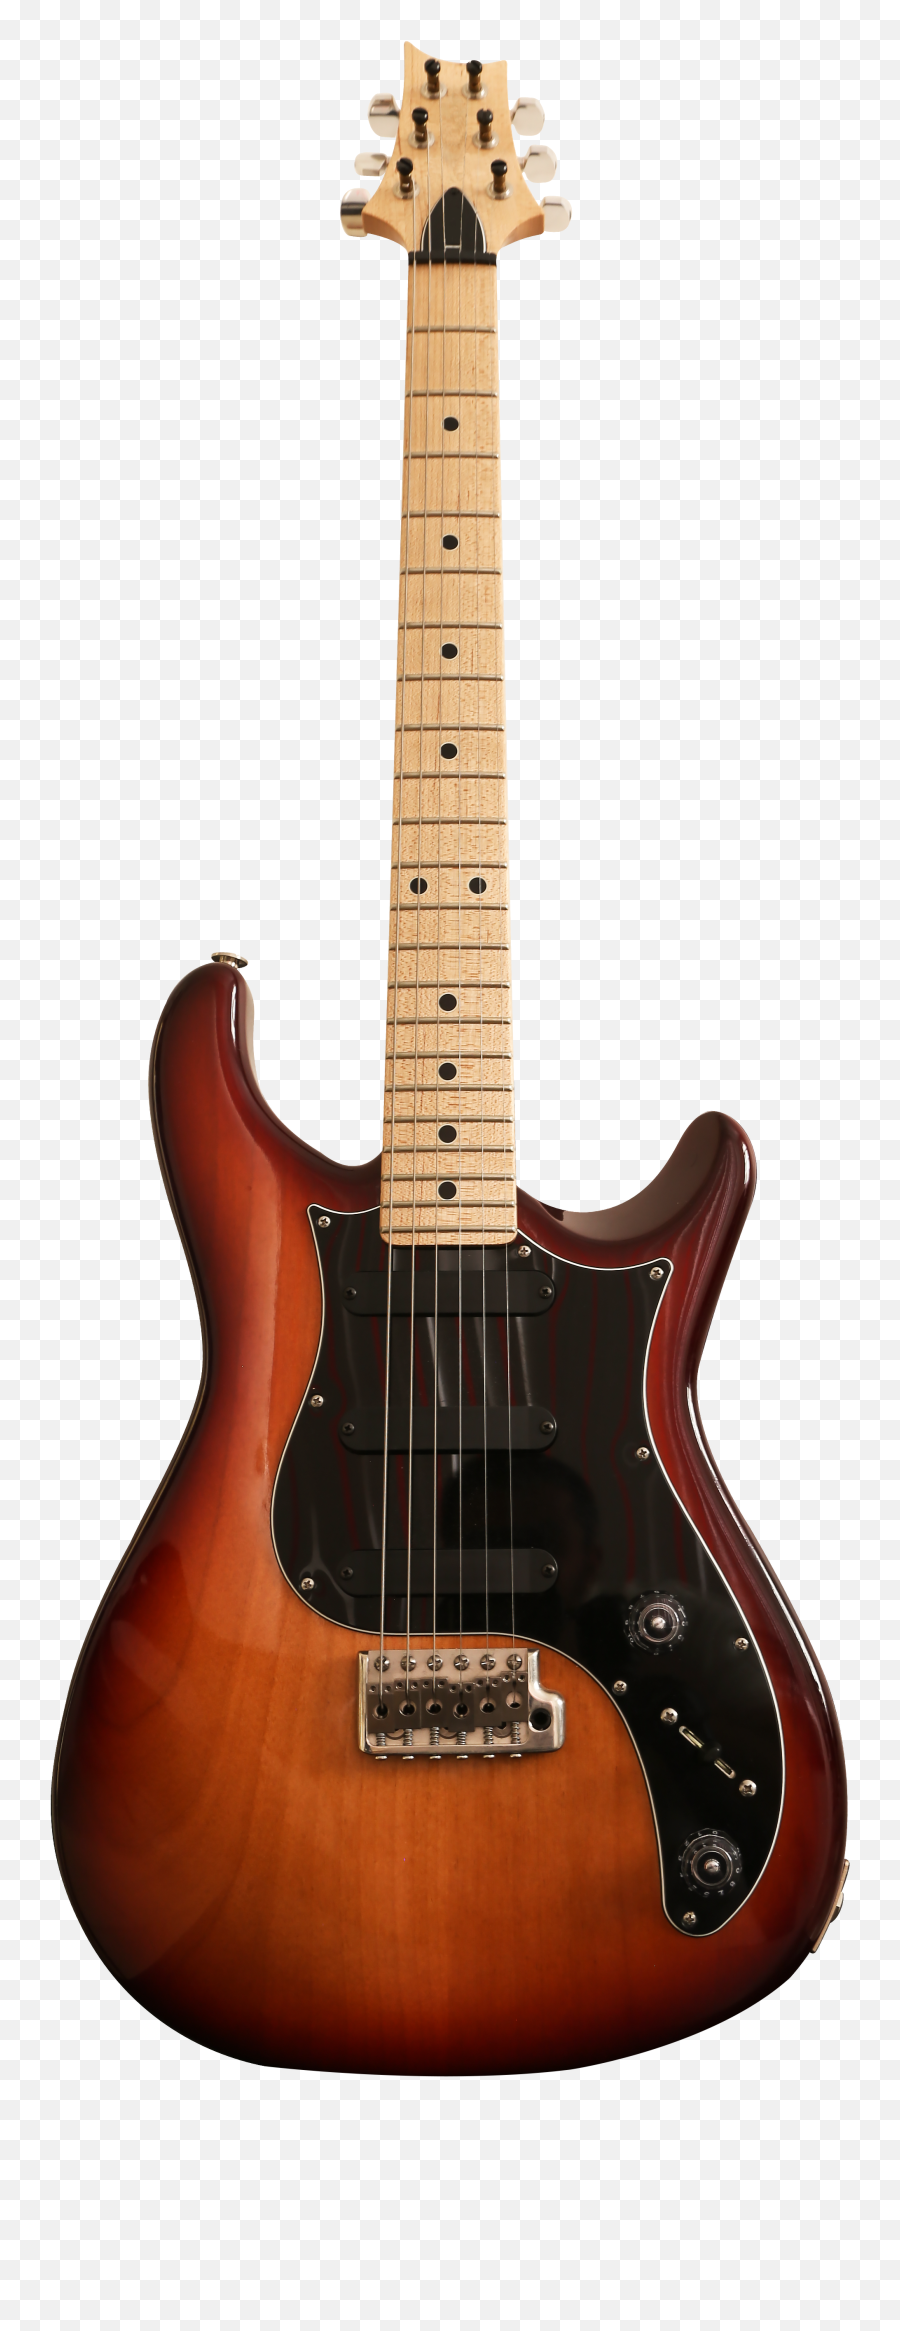 Guitar Transparent Png Clipart Free - Guitar,Bass Guitar Png